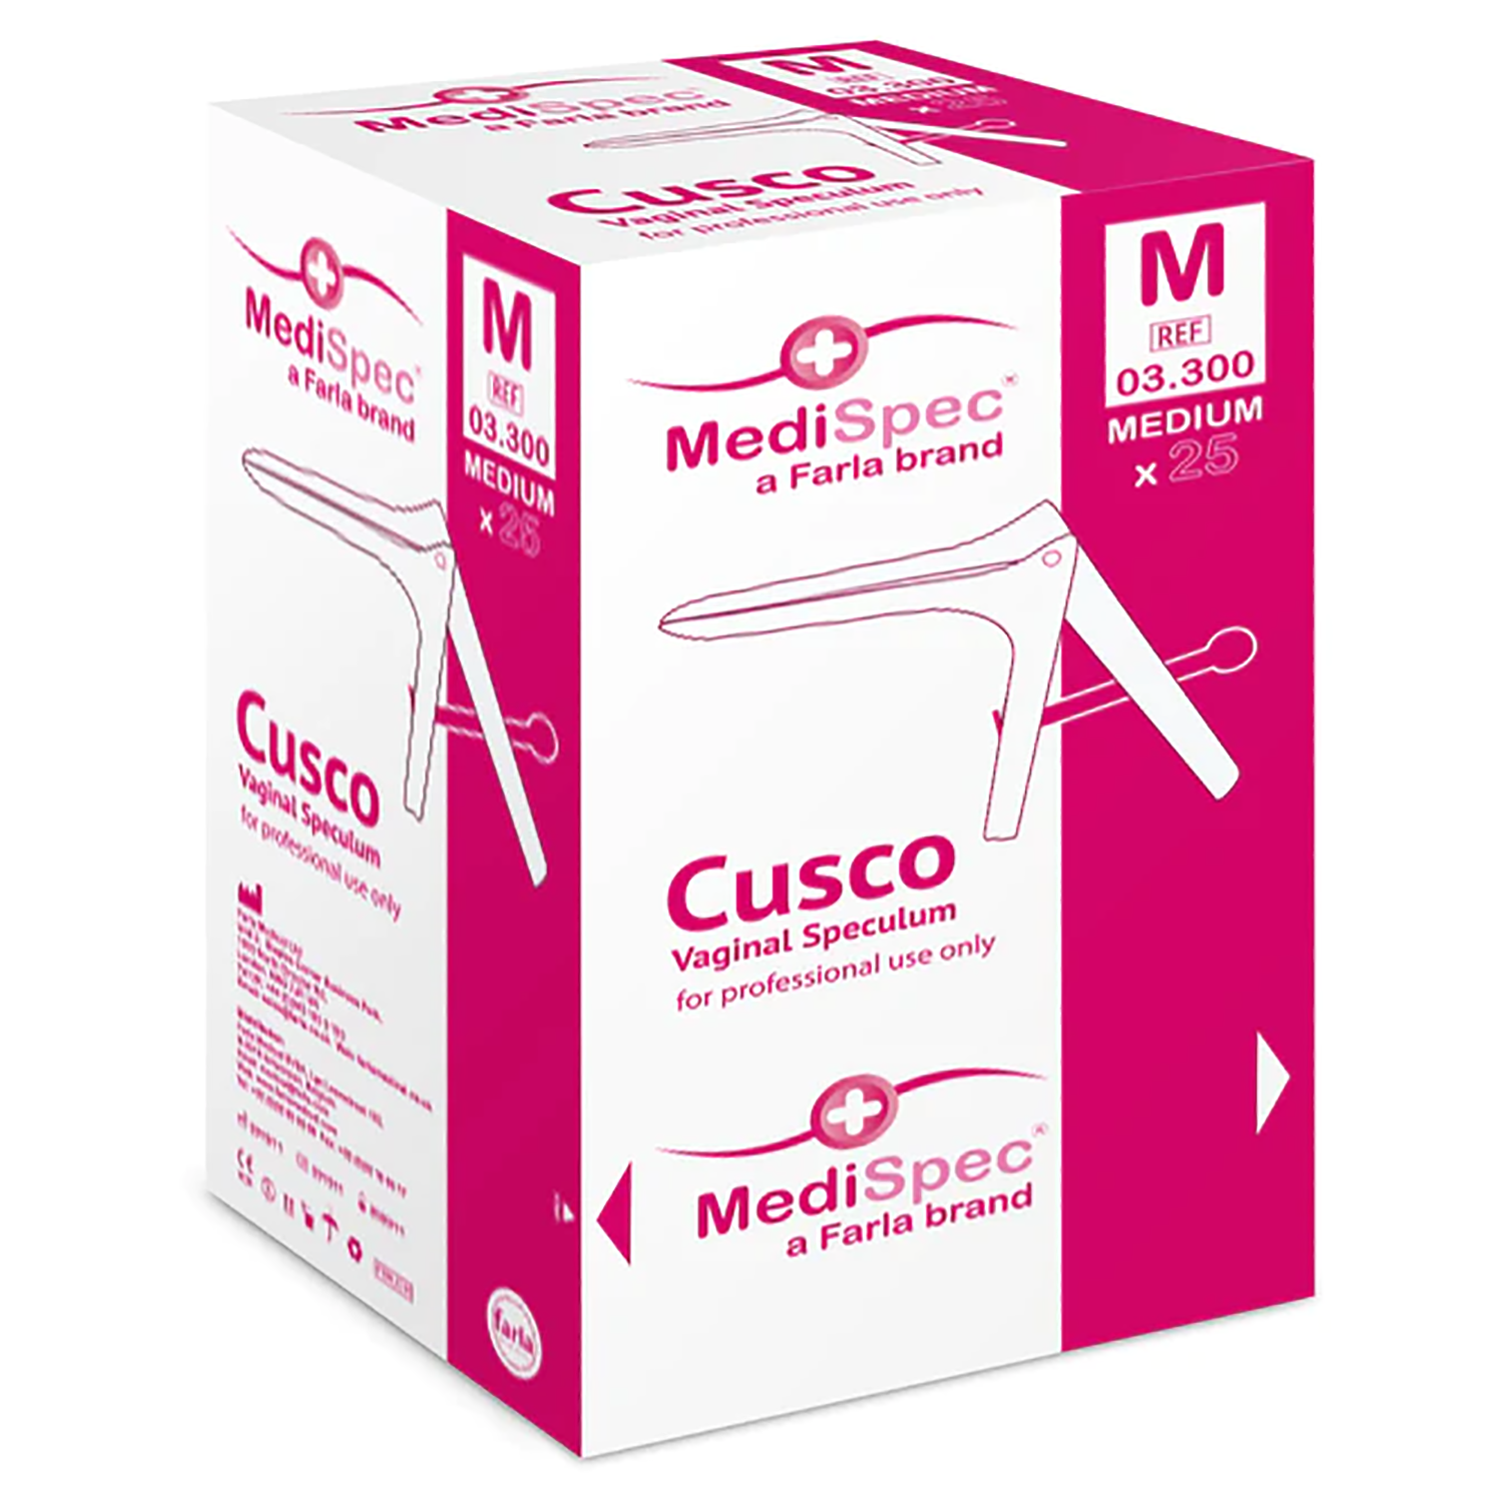 MediSpec Cusco Vaginal Speculum (Locking Mechanism) | Single (6)